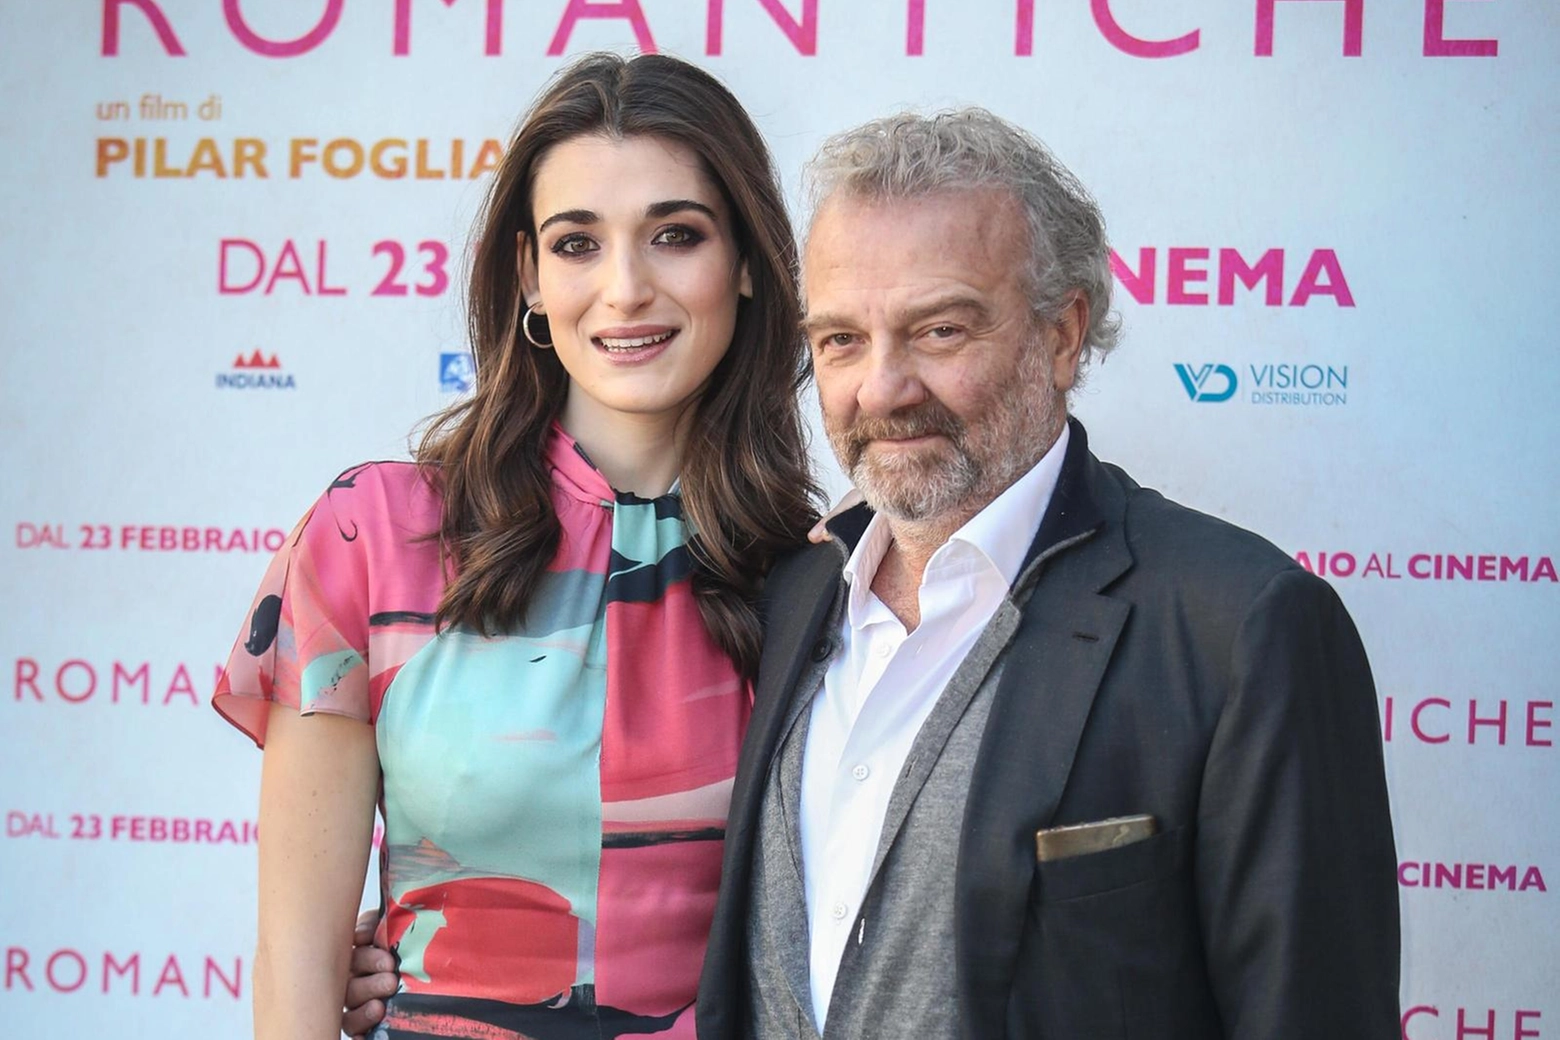 Pilar Fogliati e Giovanni Veronesi alla presentazione del film "Romeo è Giulietta"